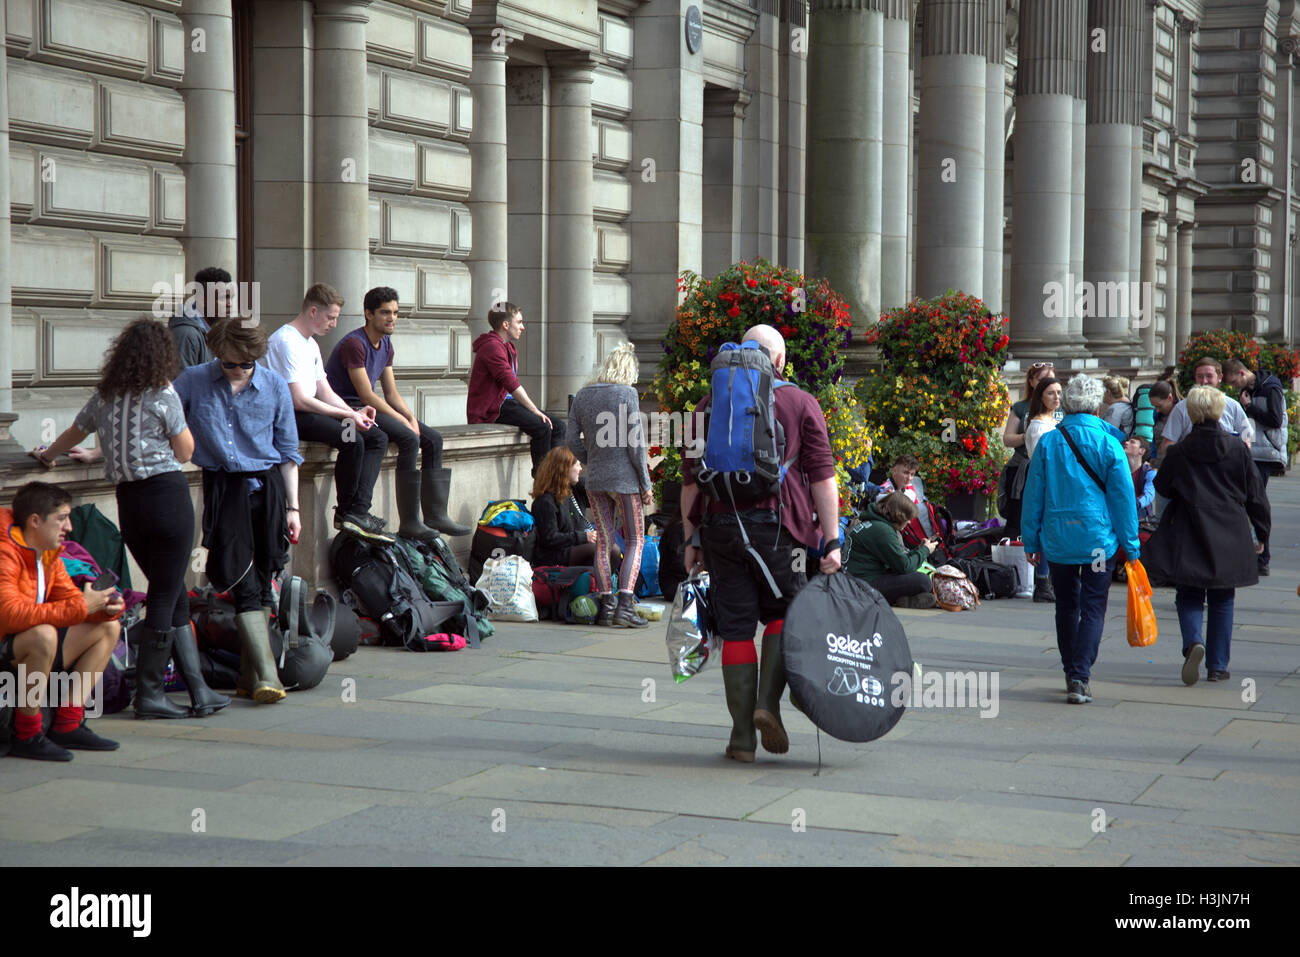 Los asistentes al festival en la Plaza de George, Glasgow se preparan para abordar los autobuses a T en el parque festival pop y llevar todo lo necesario para el wee Foto de stock